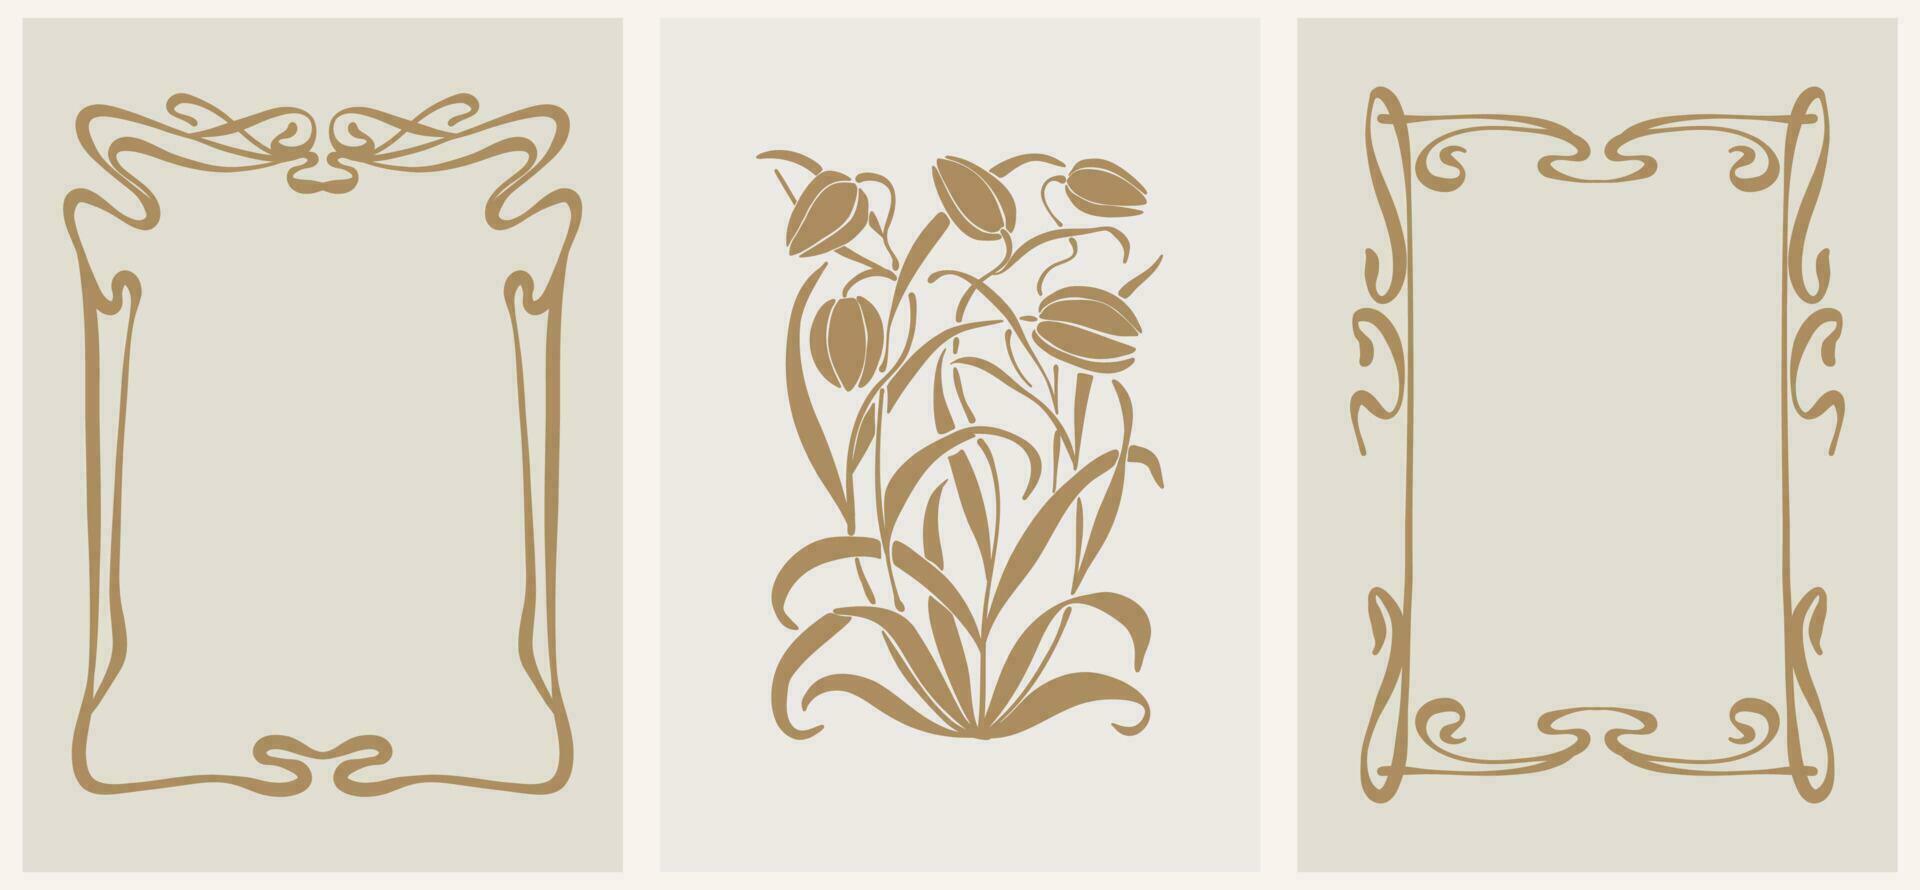 abstract bloemen kader vector illustratie. botanisch ontwerp retro jaren 70, jaren 80, jaren 90.